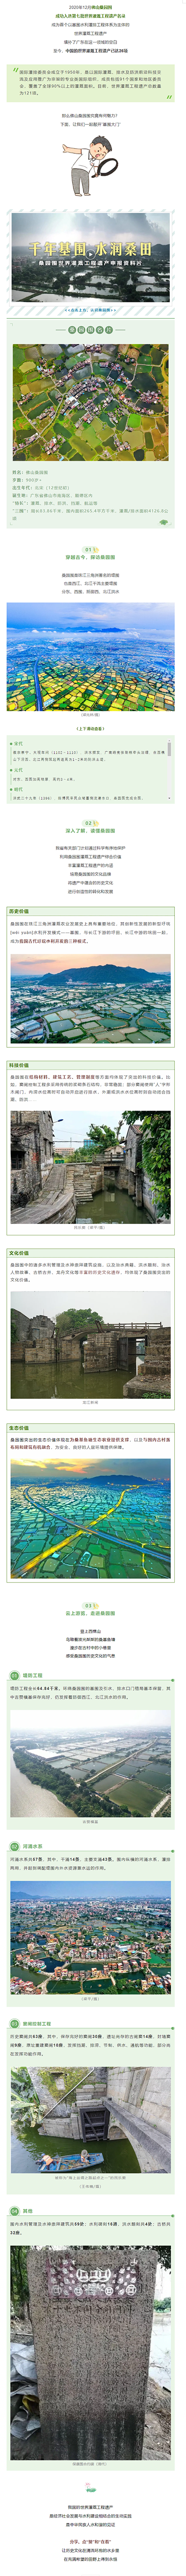 广东首个世界灌溉工程遗产就是Ta！.png